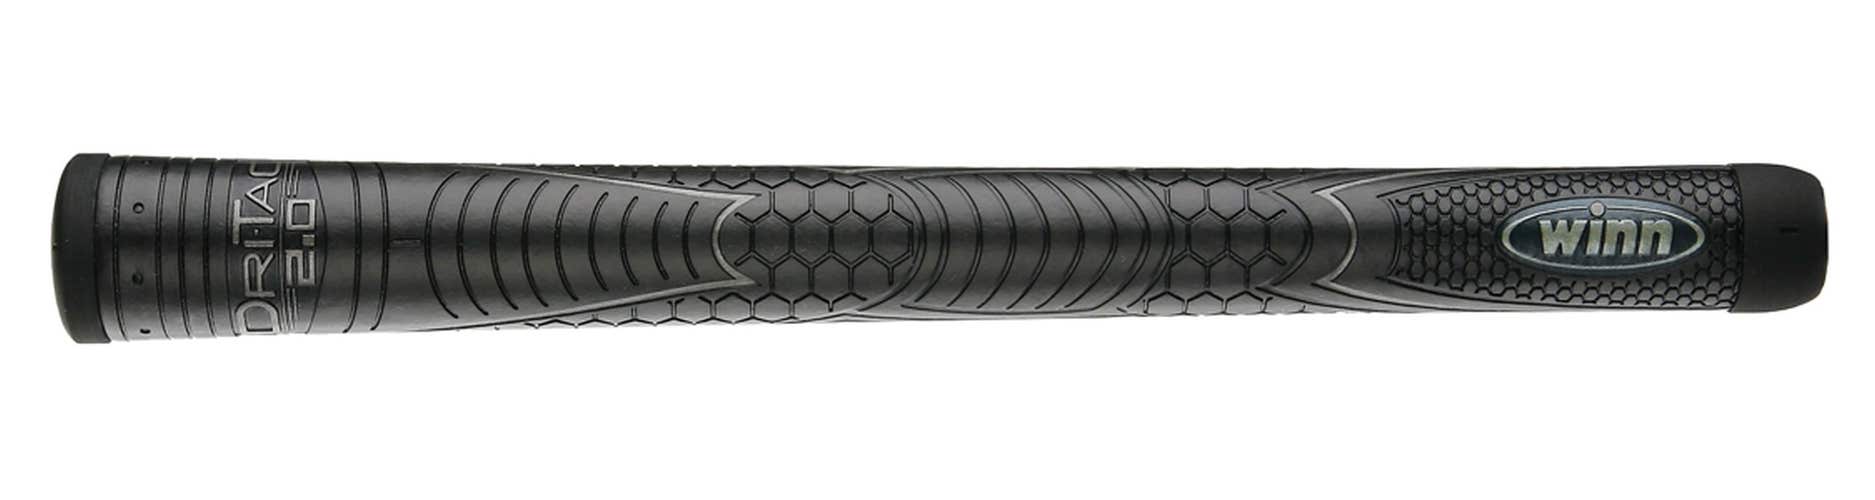 Winn Dri-Tac 2.0 Golf Grip (Oversize, Jet Black) NEW